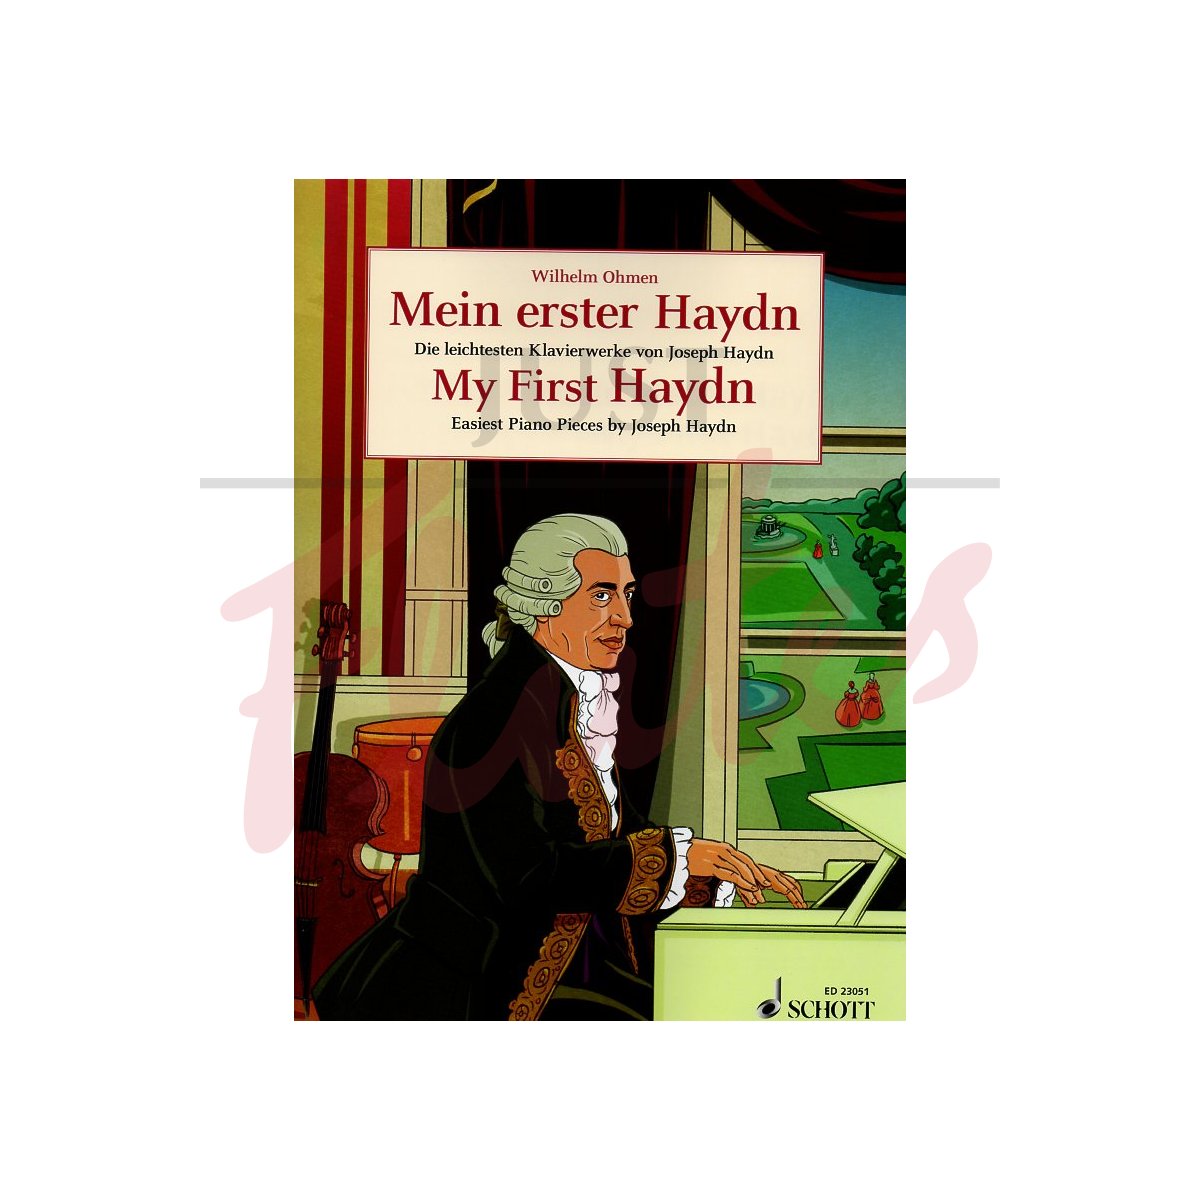 My First Haydn